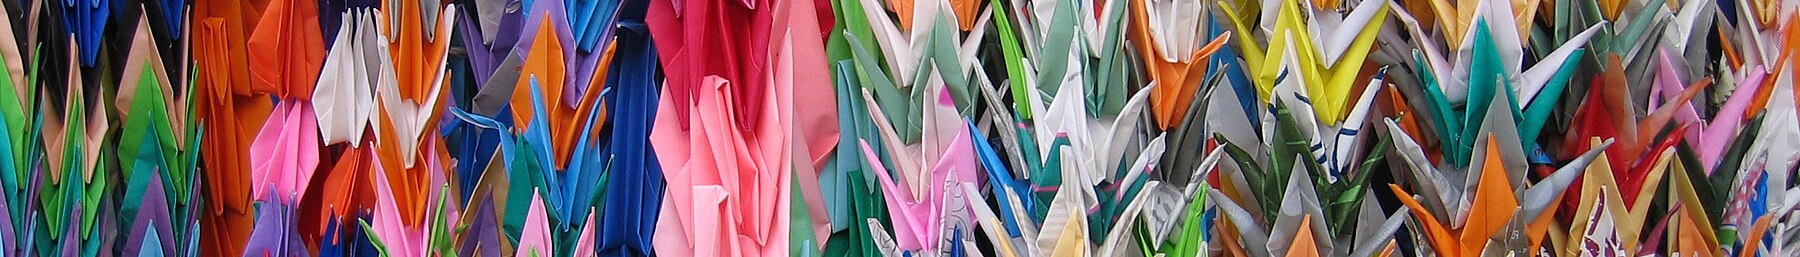 Hiroşima afiş Origami vinçler.jpg